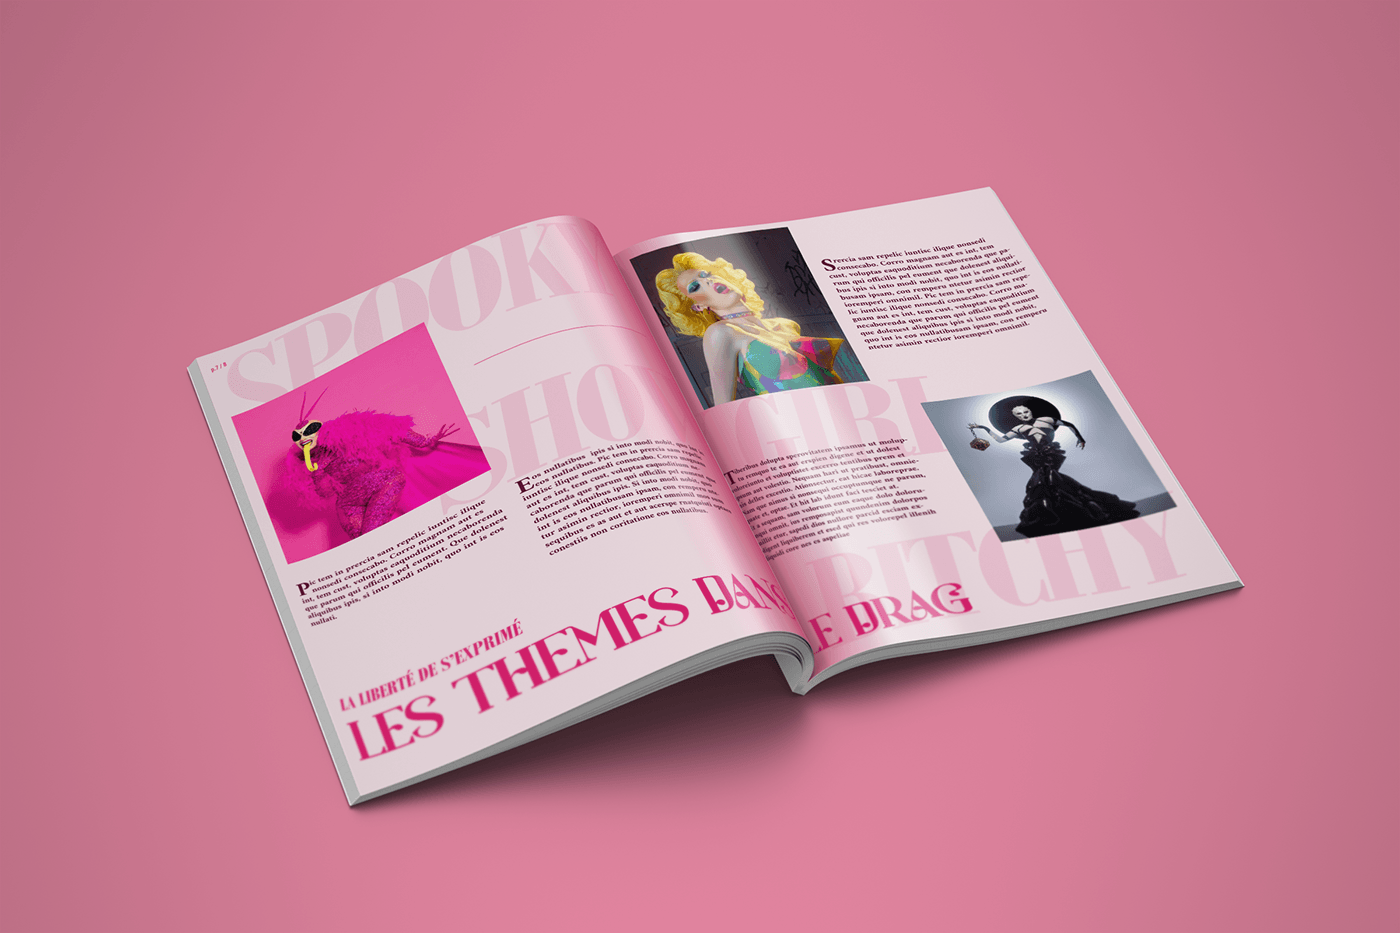 Drag drag queen Rupaul design editorial graphic designer art concept Original extravagant